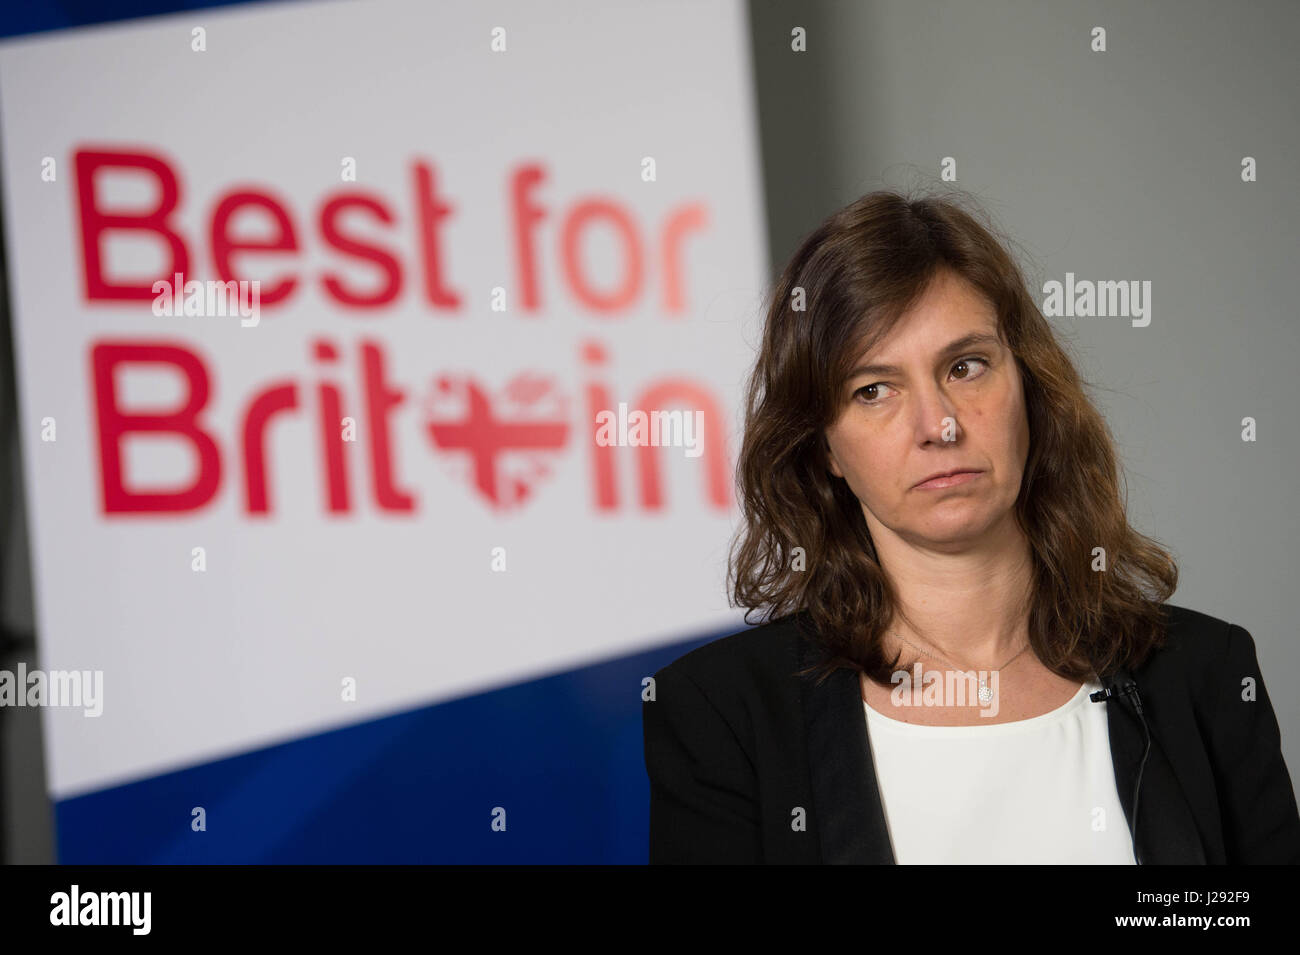 Eloise Todd al lancio dei migliori per la Gran Bretagna campagna che mira a convincere la gente a votare tatticamente nell'elezione generale, presso l'Institute of Contemporary Arts di Londra centrale. Foto Stock